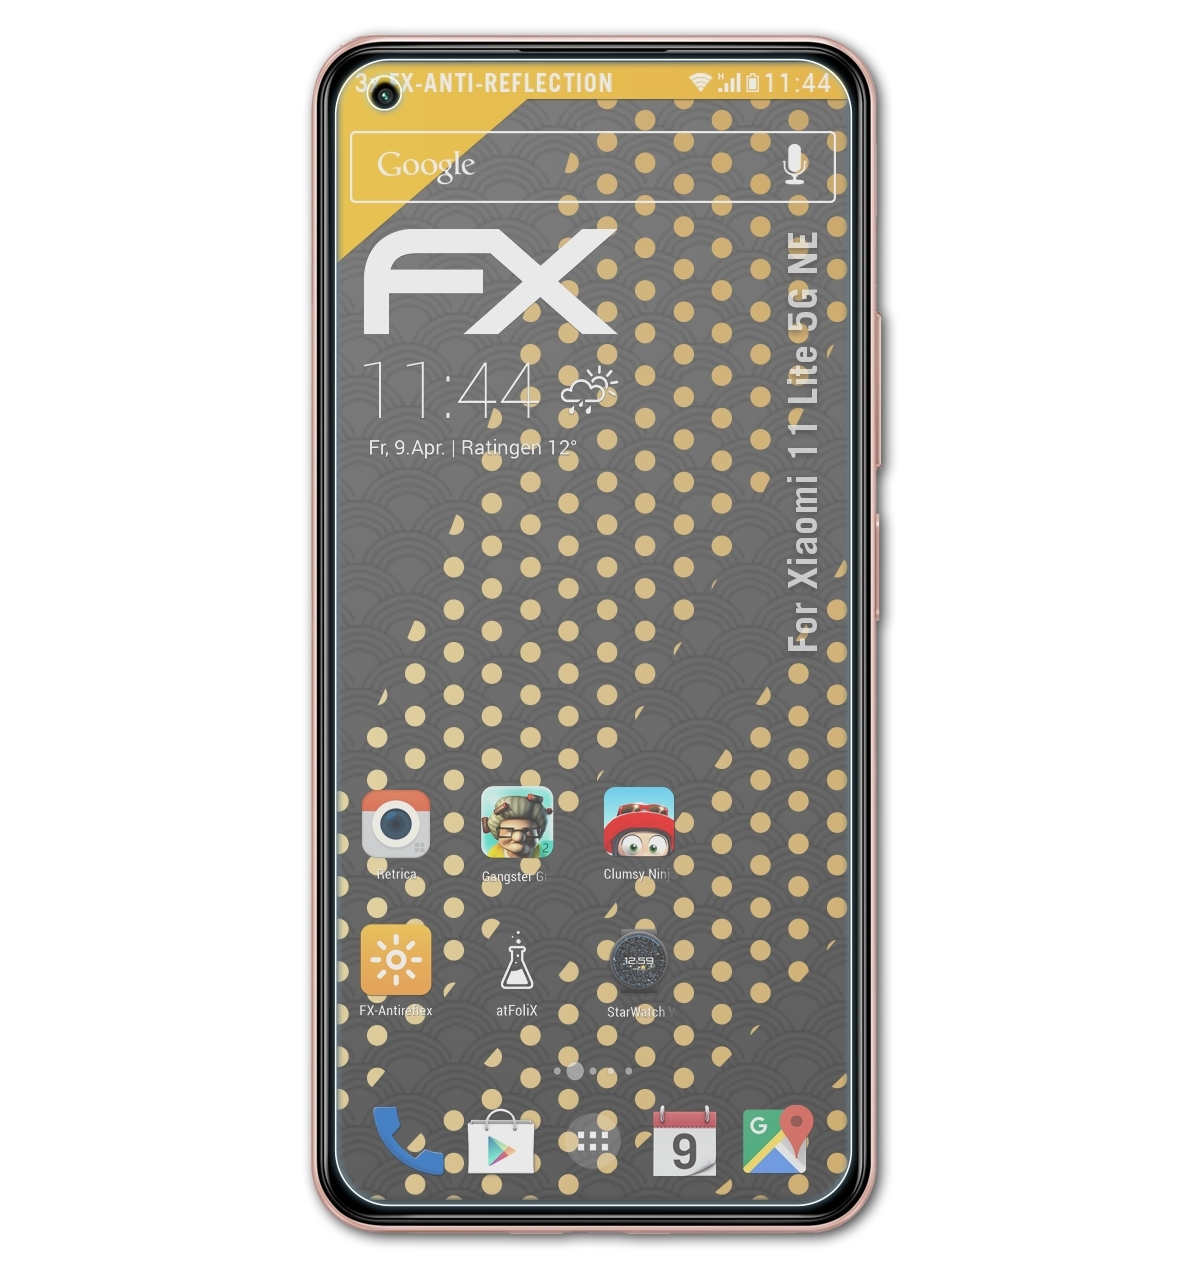 ATFOLIX 3x FX-Antireflex Displayschutz(für Xiaomi 5G Lite 11 NE)